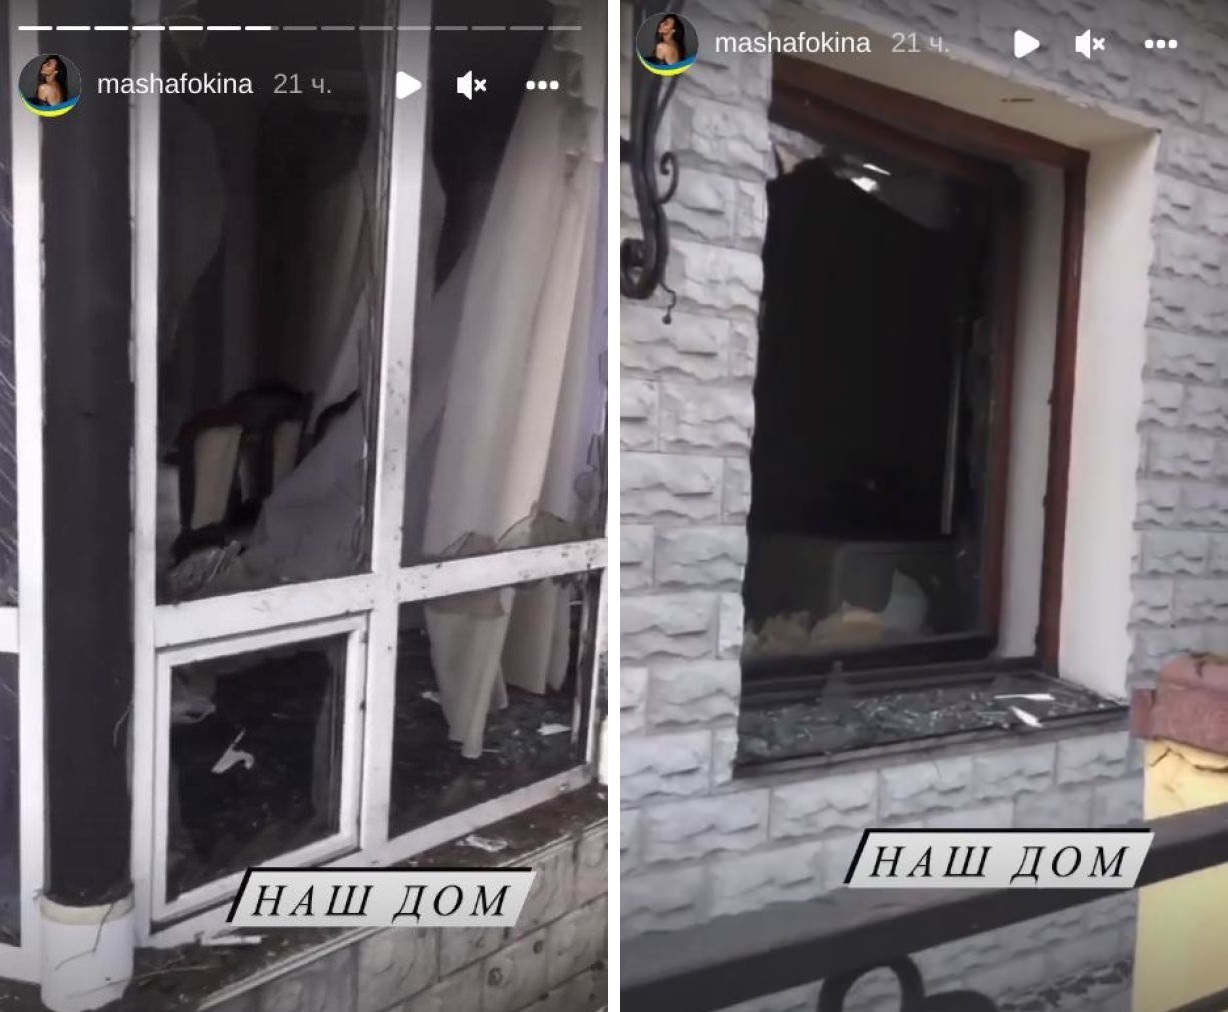 Гвоздева, Кондратюк, Харчишин: какие украинские звезды потеряли свои дома от бомбардировок РФ